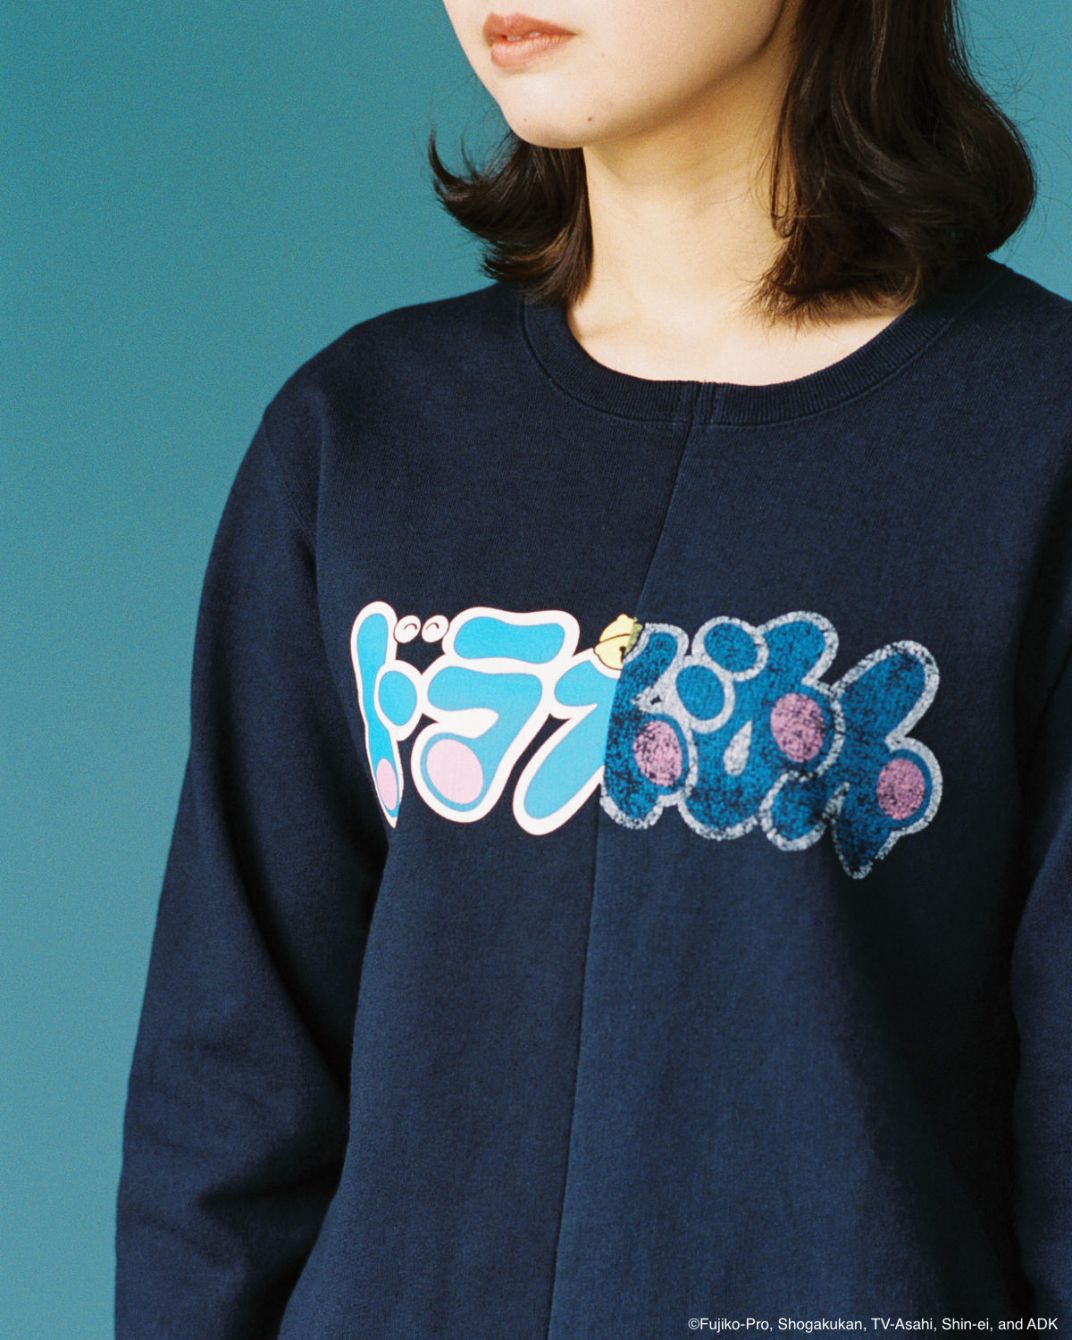 # 日本實驗服飾品牌 ALOYE × 國民動畫 哆啦 A 夢：推出異次元跨越聯名系列。 1